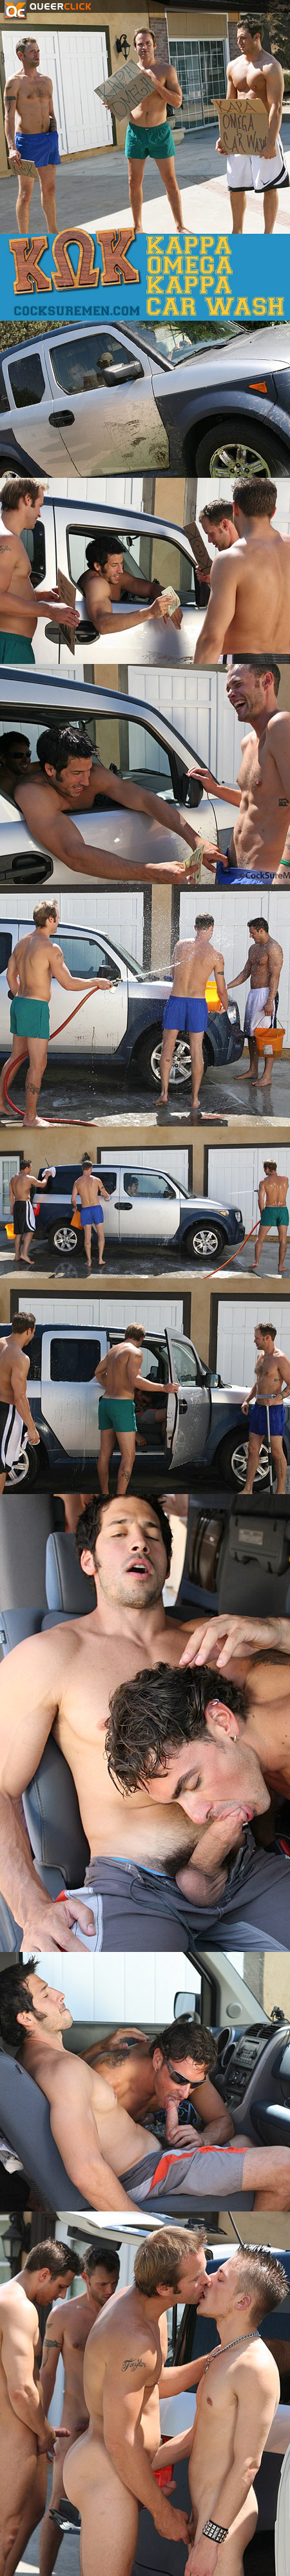 Kappa Omega Kappa Car Wash at Cocksure Men